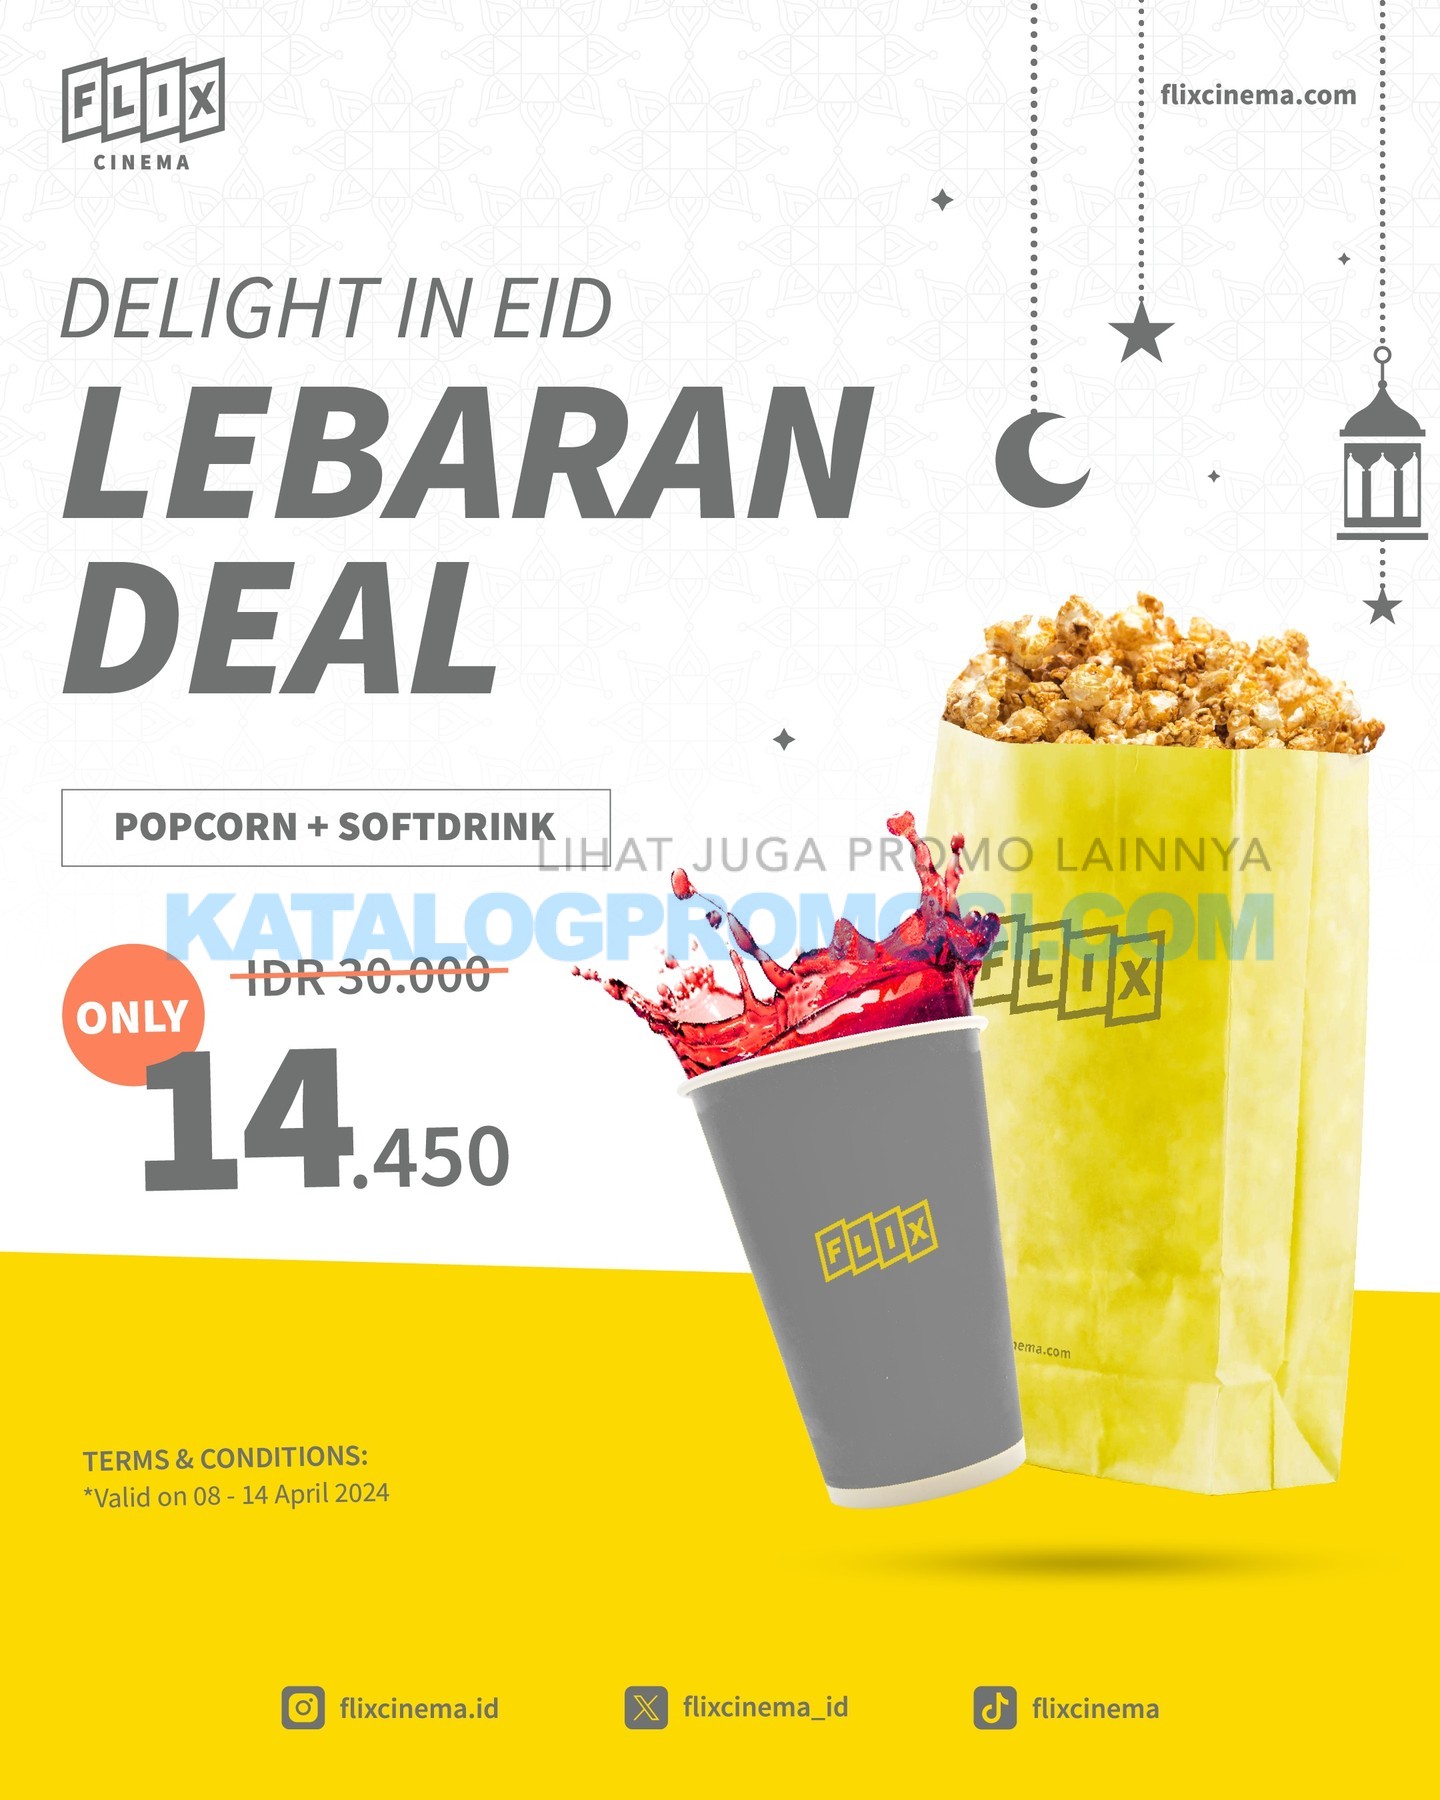 Promo FLIX CINEMA LEBARAN DEAL - Paket Popcorn dan Minuman Hanya Rp 14.450 BERLAKU tanggal 08-14 April 2024